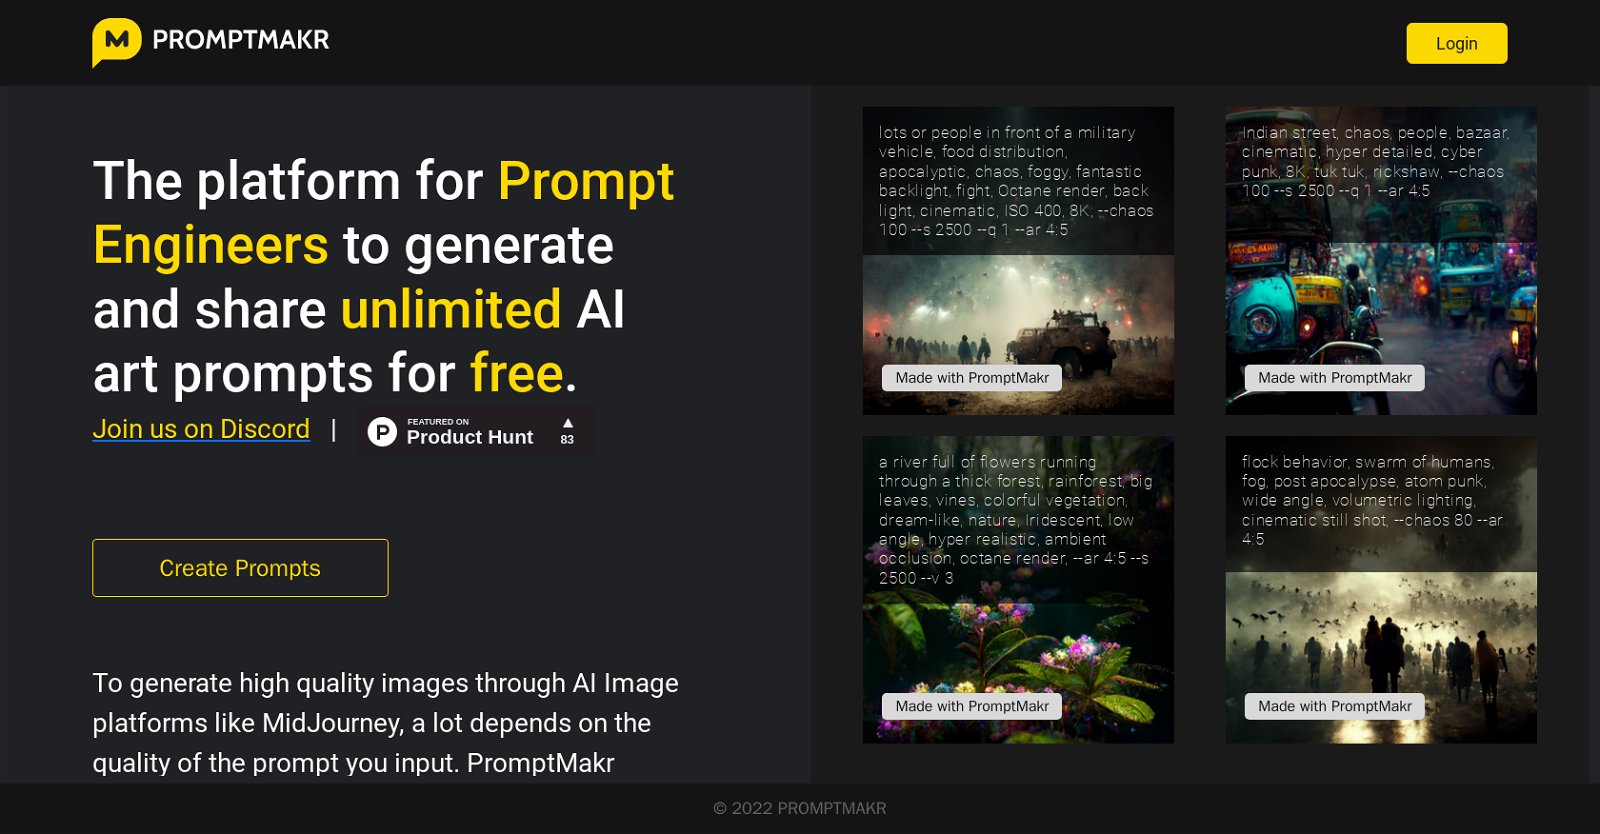 Promptmakr website